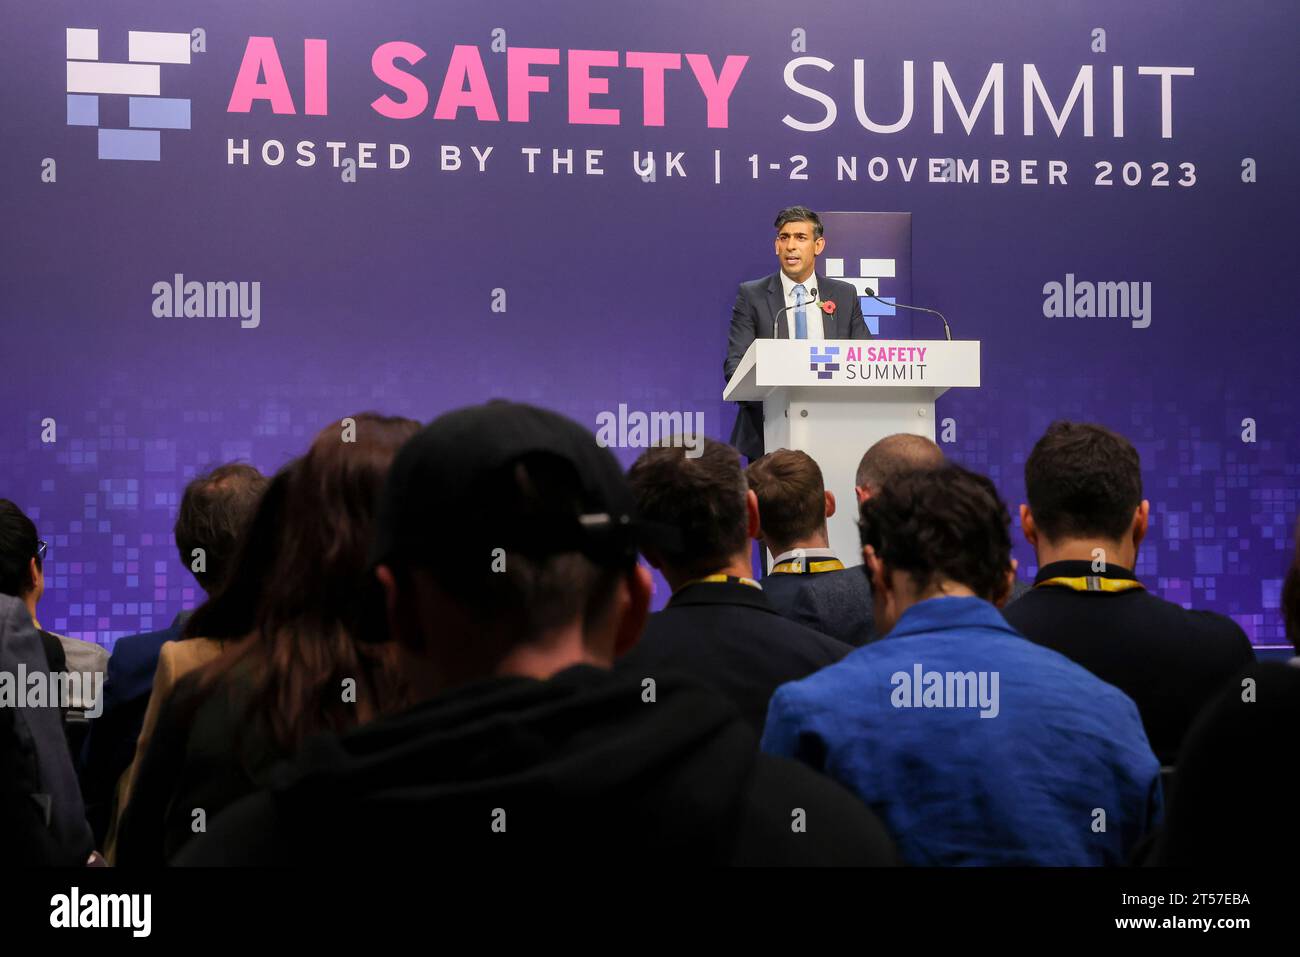 BLETCHLEY PARK, BUCKINGHAMSHIRE, ANGLETERRE, Royaume-Uni - 02 novembre 2023 - le Premier ministre du Royaume-Uni, Rishi Sunak, termine la deuxième journée du Sommet sur la sécurité de l'IA à Bletchley Park Banque D'Images